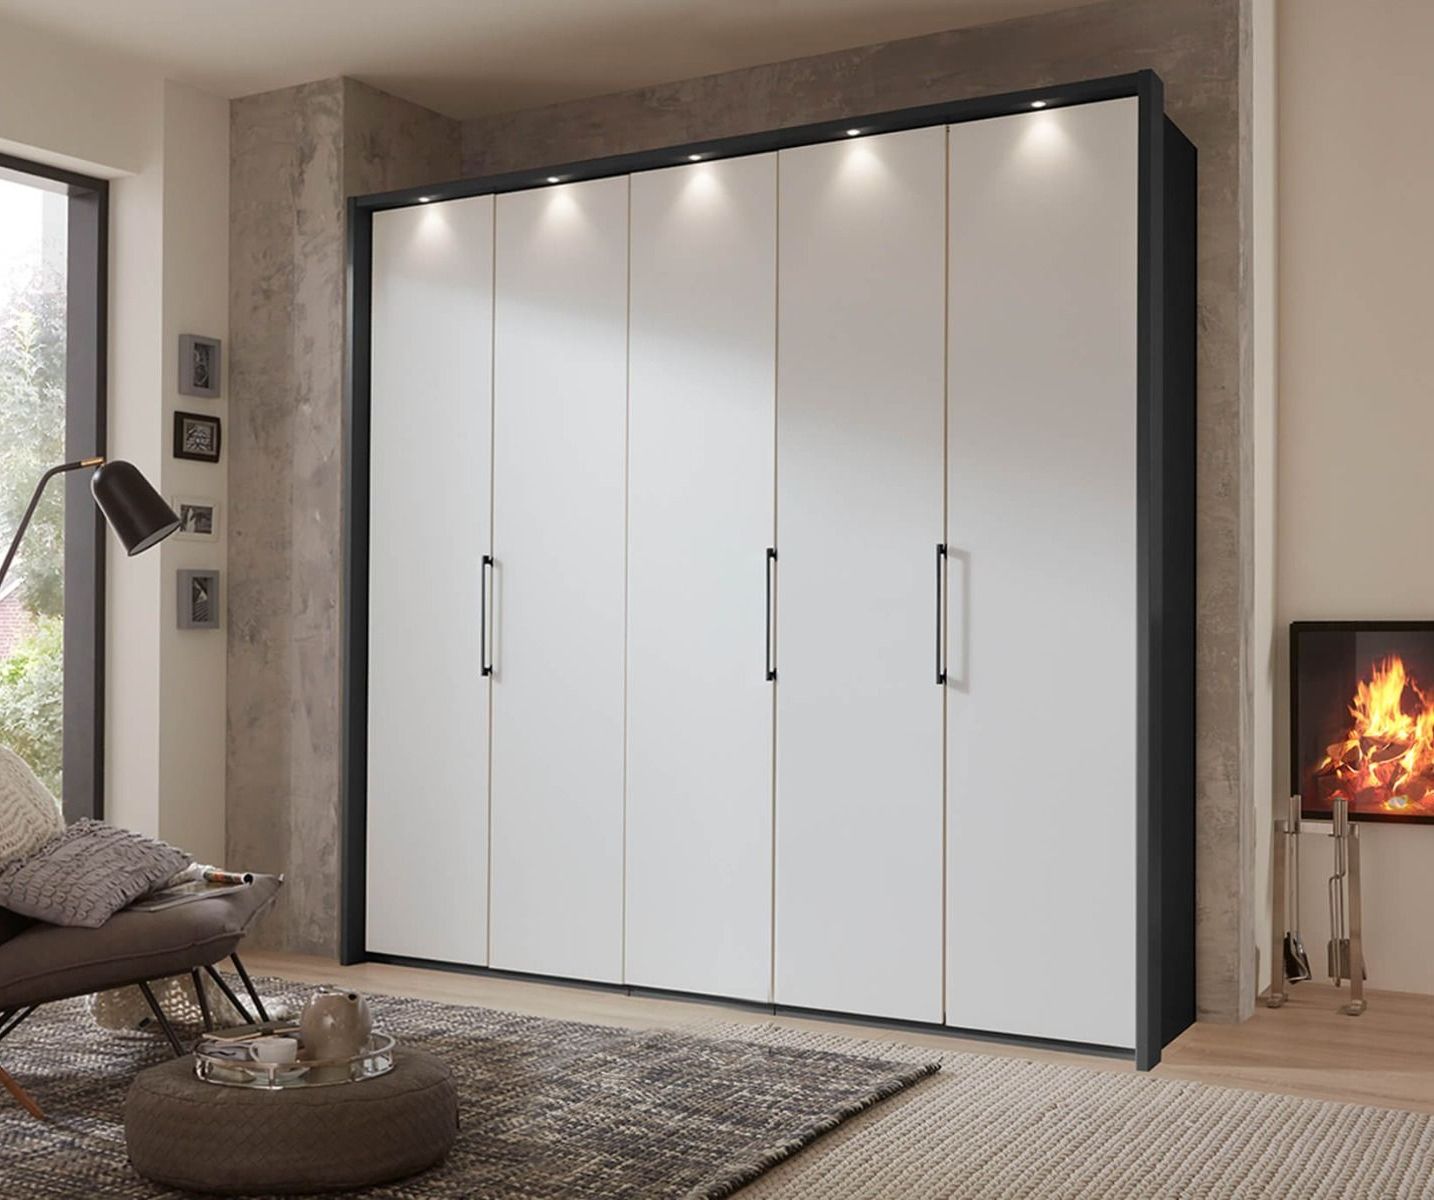 Wiemann Glasgow Pebble Grey Matt Glass 5 Door Hinged Wardrobe | Beds Direct  Uk Regarding 5 Door Wardrobes (Gallery 12 of 20)